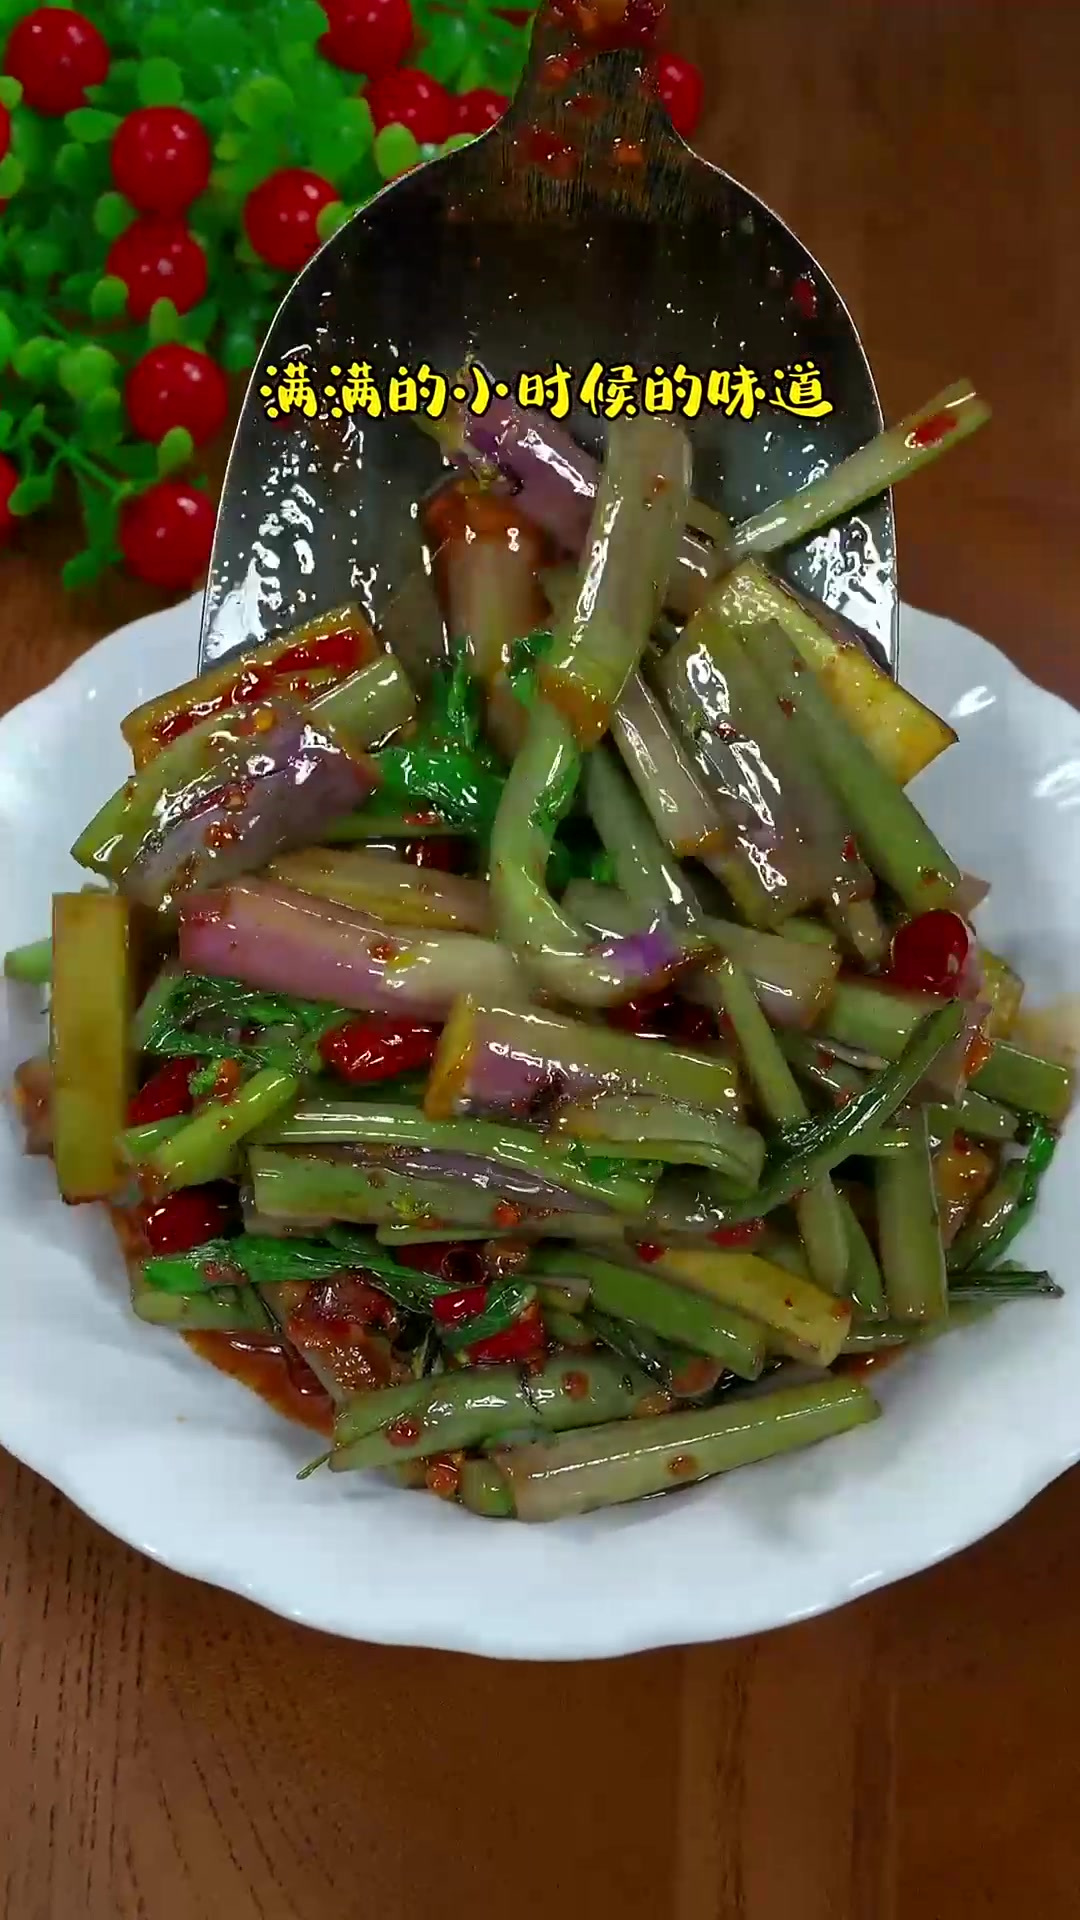 又到吃红菜苔的季节,这样做的红菜苔只有郴州人才知道的美味!